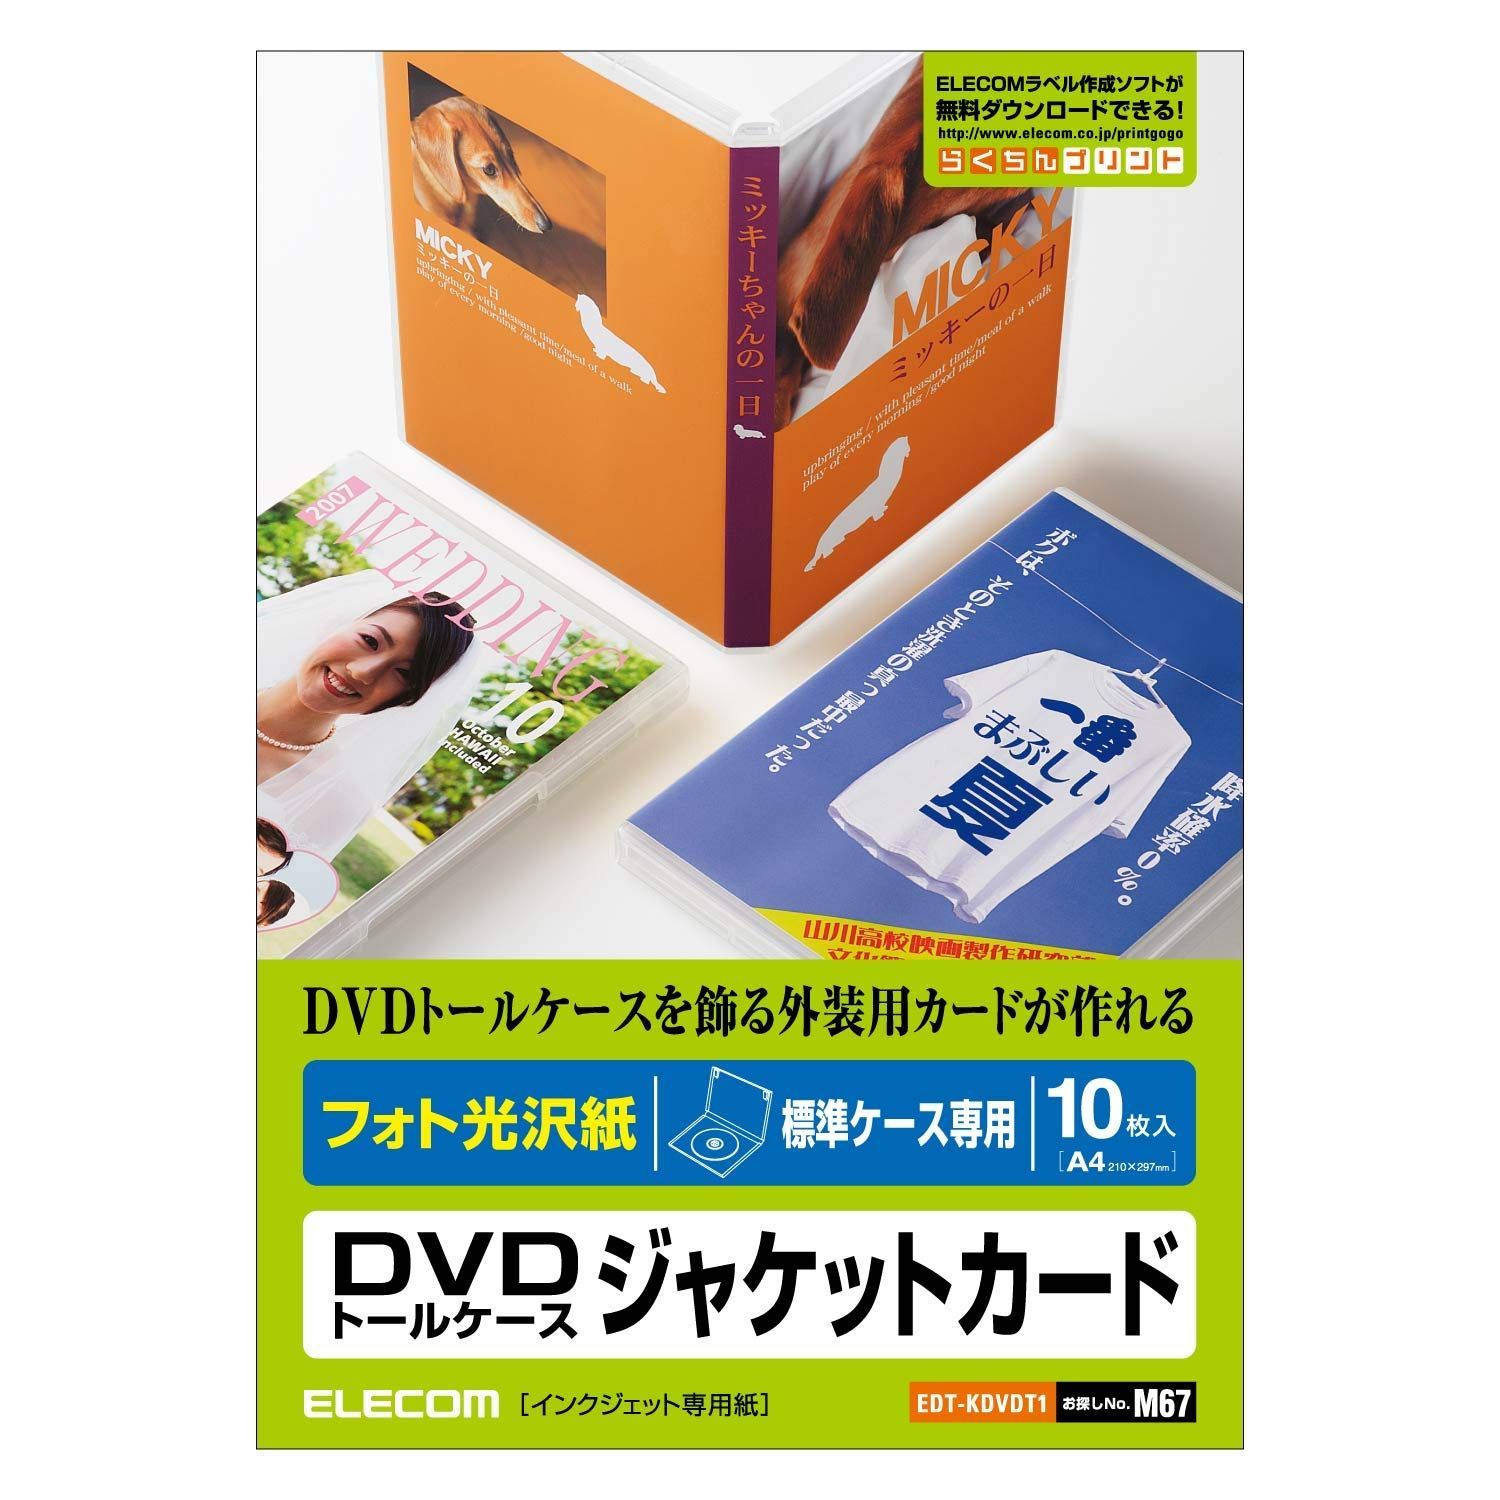 新着商品】EDT-KDVDT1 DVDトールケースカード(光沢)/10枚入り メルカリShops